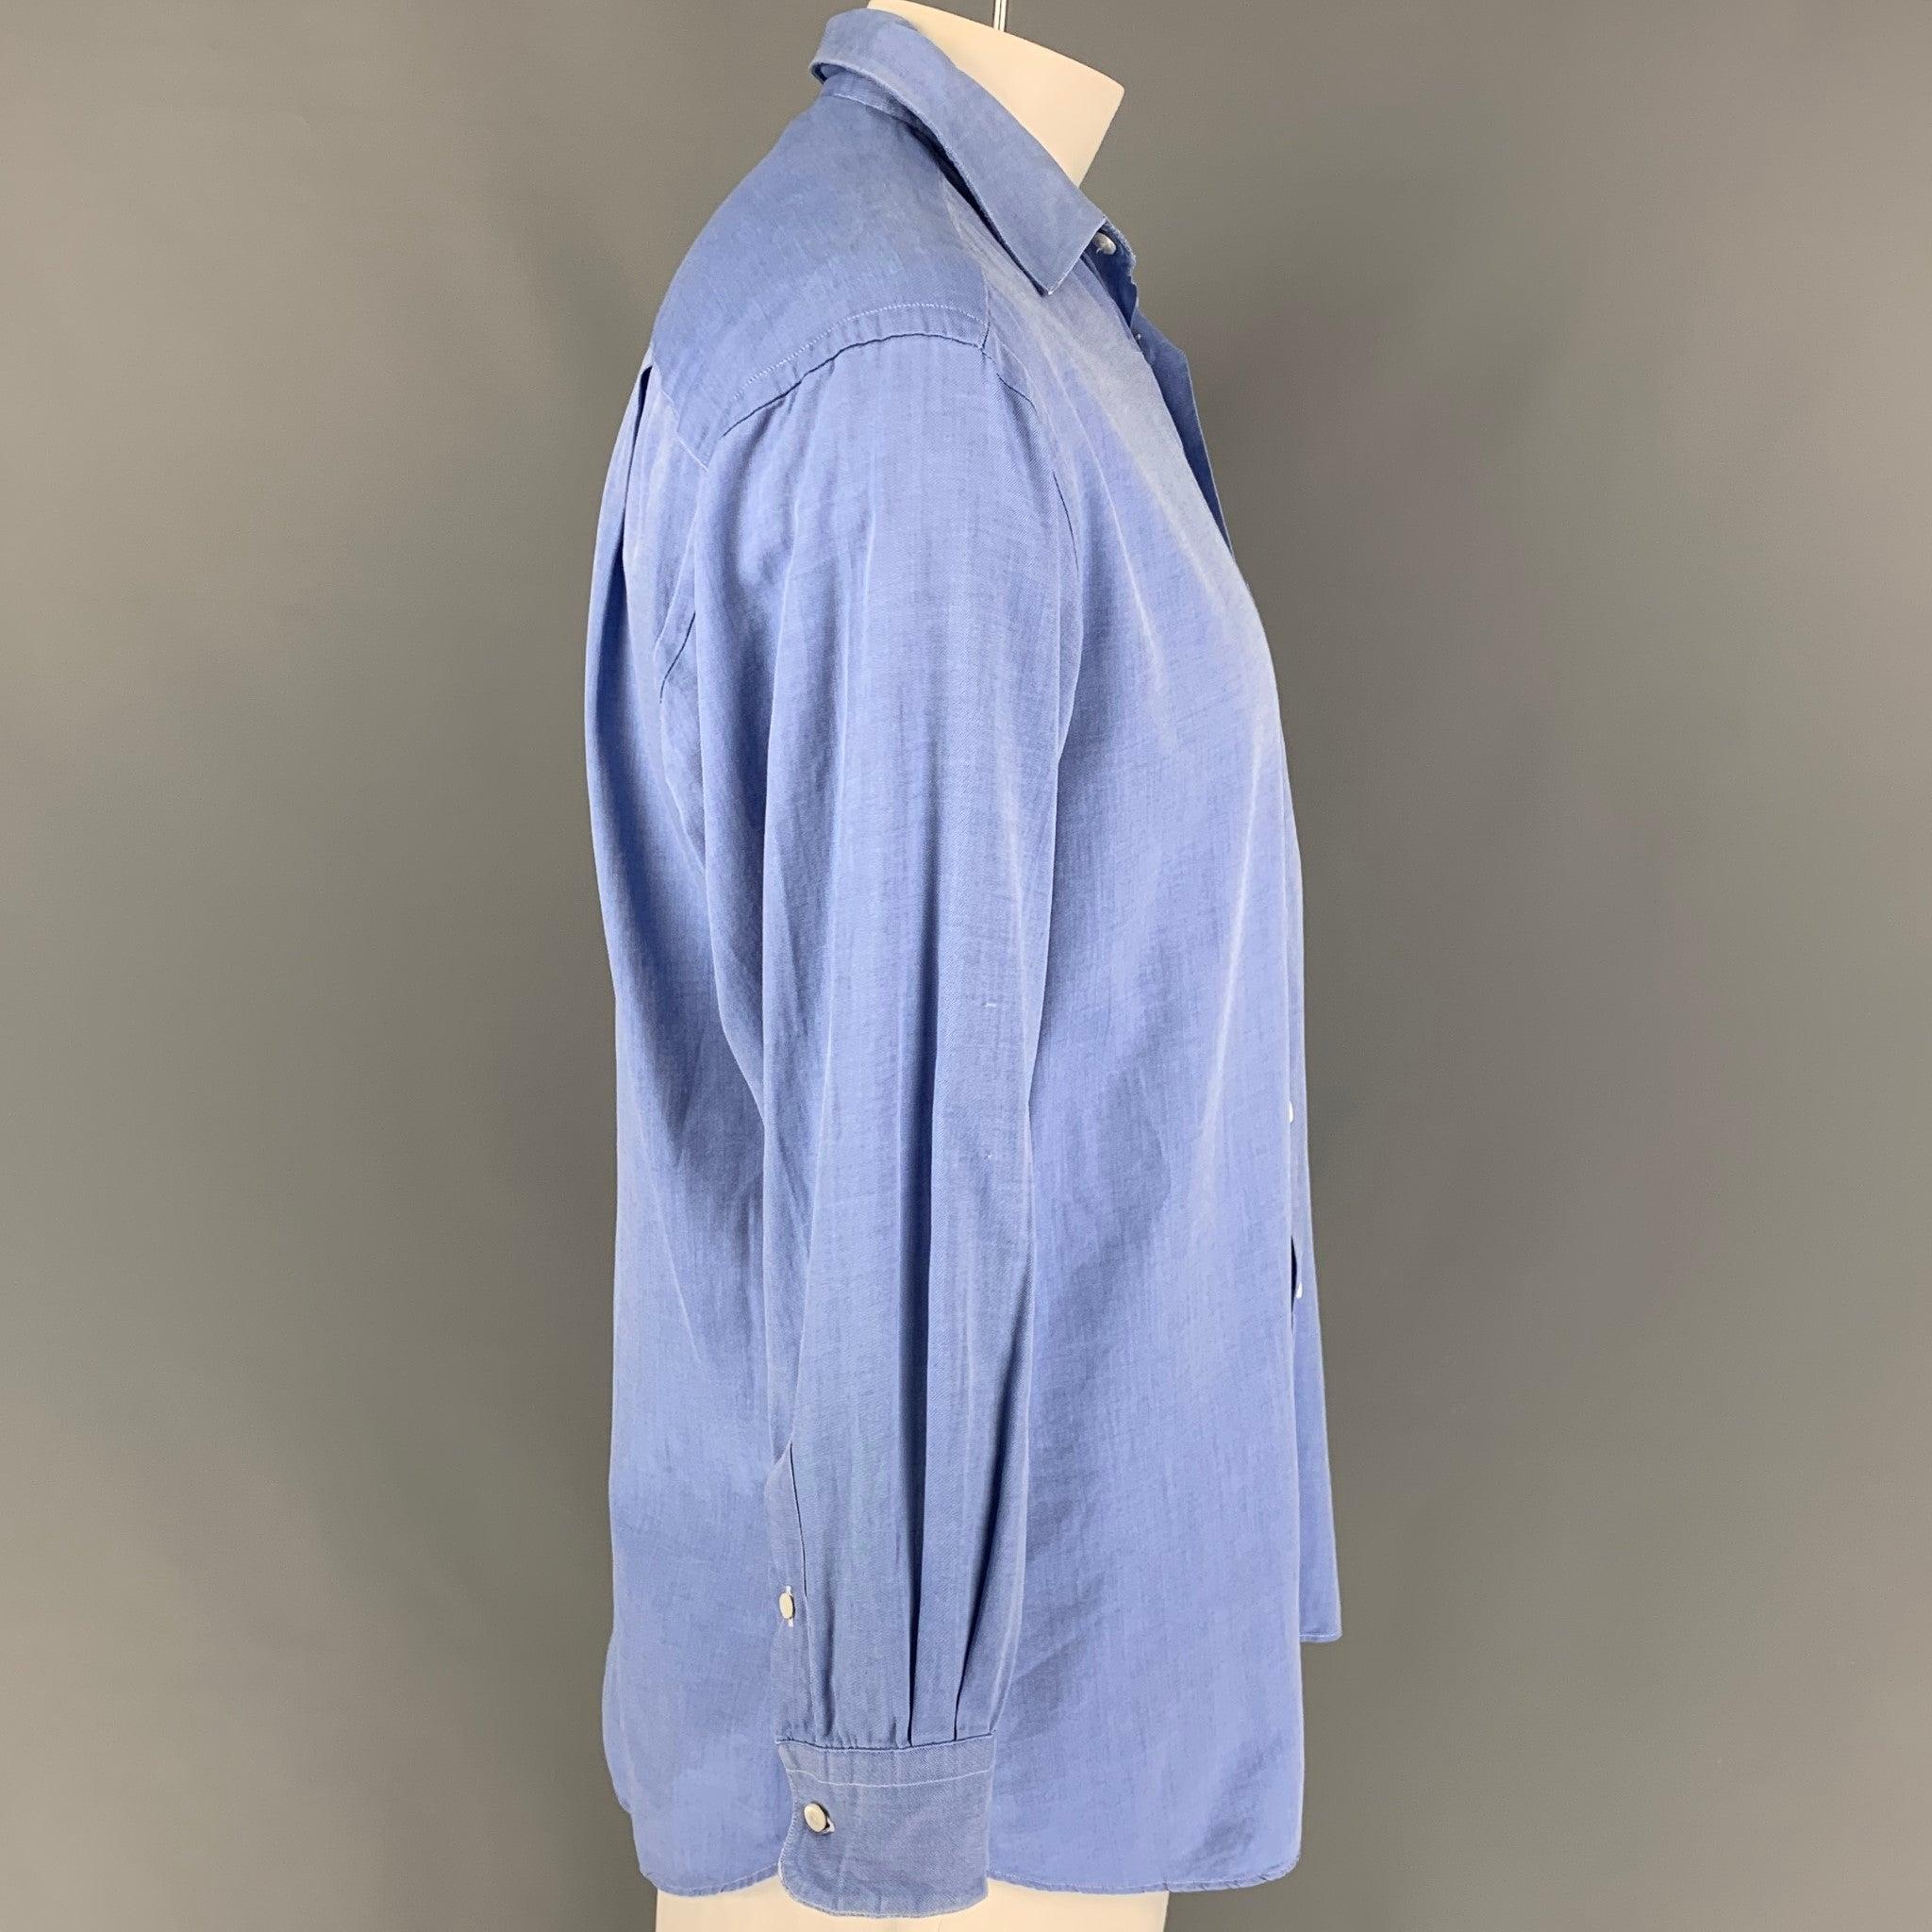 La chemise à manches longues ERMENEGILDO Zegna se présente dans un coton bleu avec un col rond, une poche frontale et une fermeture à bouton. Fabriqué aux États-Unis.
Très bien
Etat d'occasion. 

Marqué :   41/16 

Mesures : 
 
Épaule : 20 pouces 